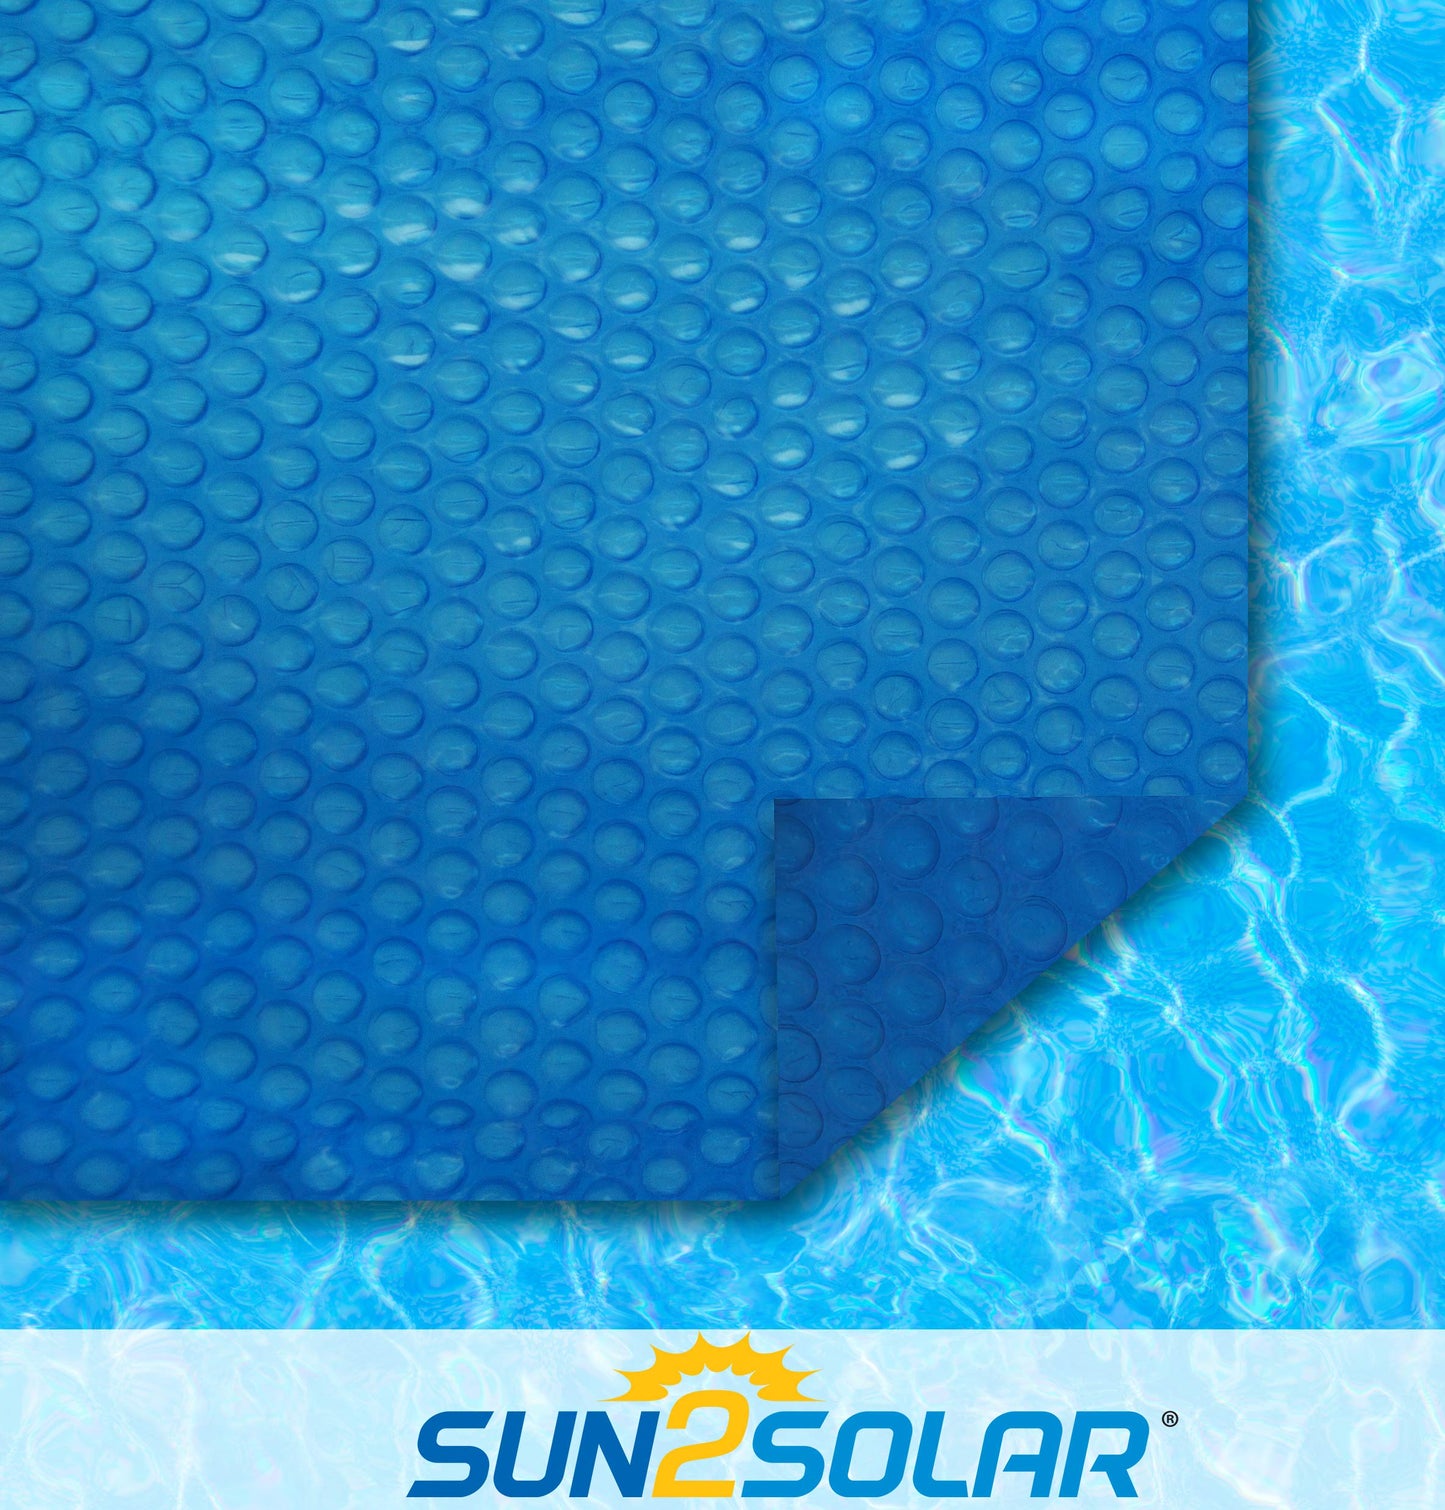 Sun2Solar Bleu Couverture solaire ovale de 15 pieds par 30 pieds | Style série 800